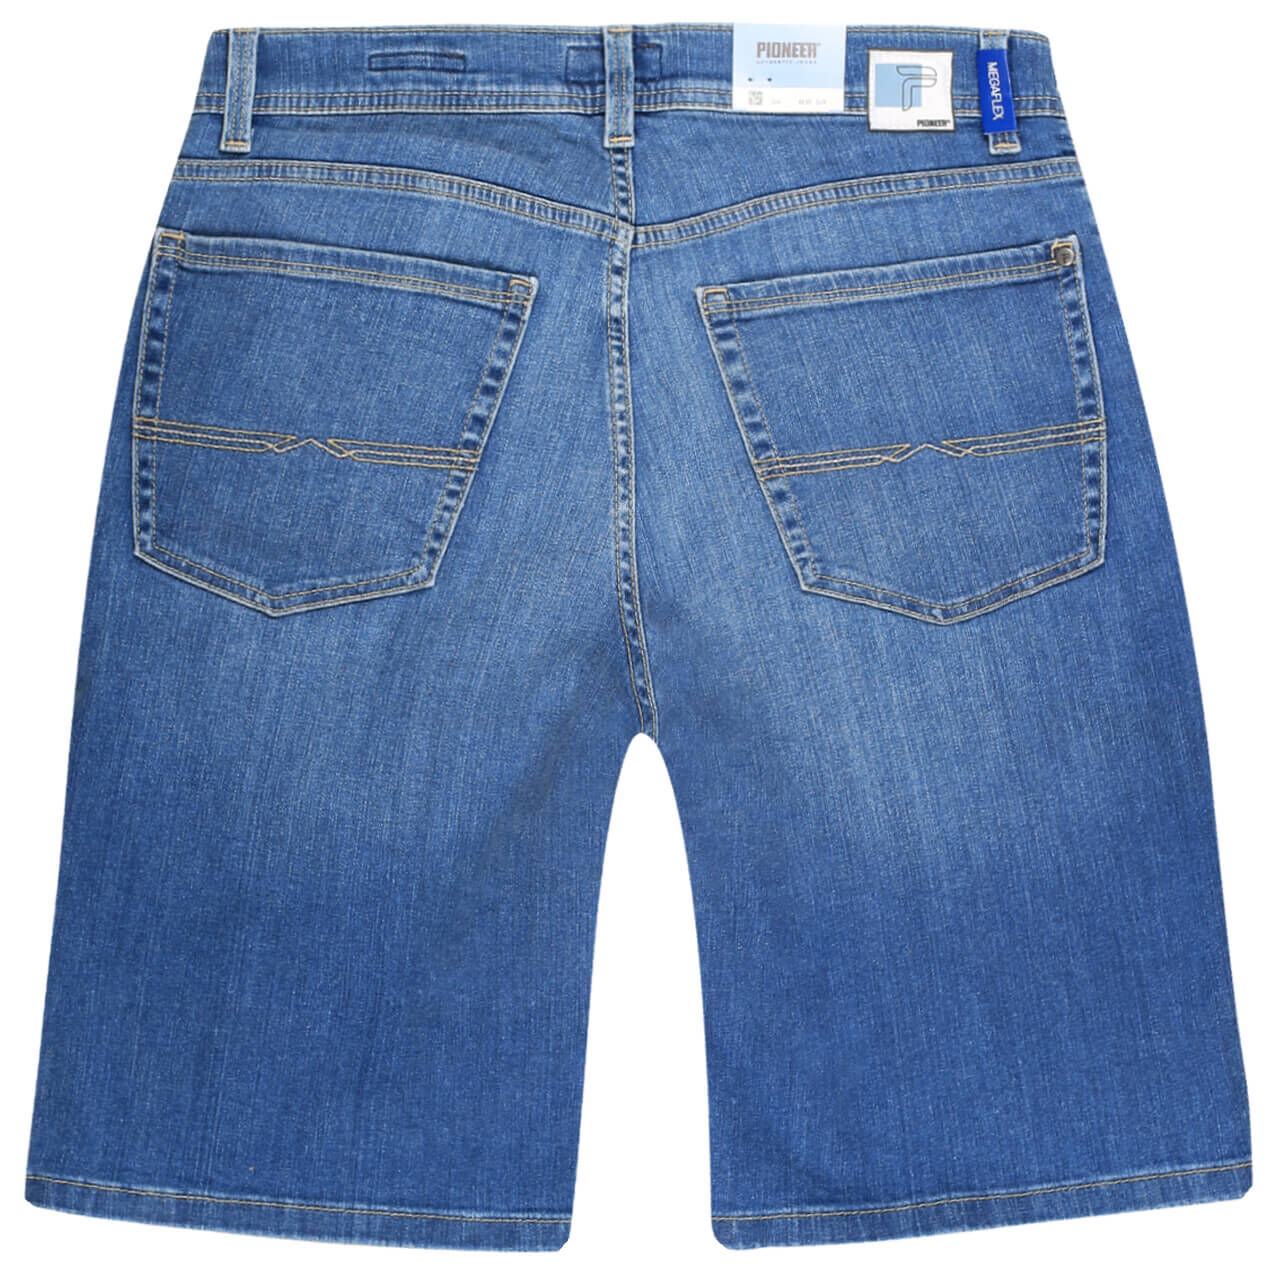 Pioneer Jeans Finn Megaflex Bermuda für Herren in Hellblau angewaschen, FarbNr.: 6835